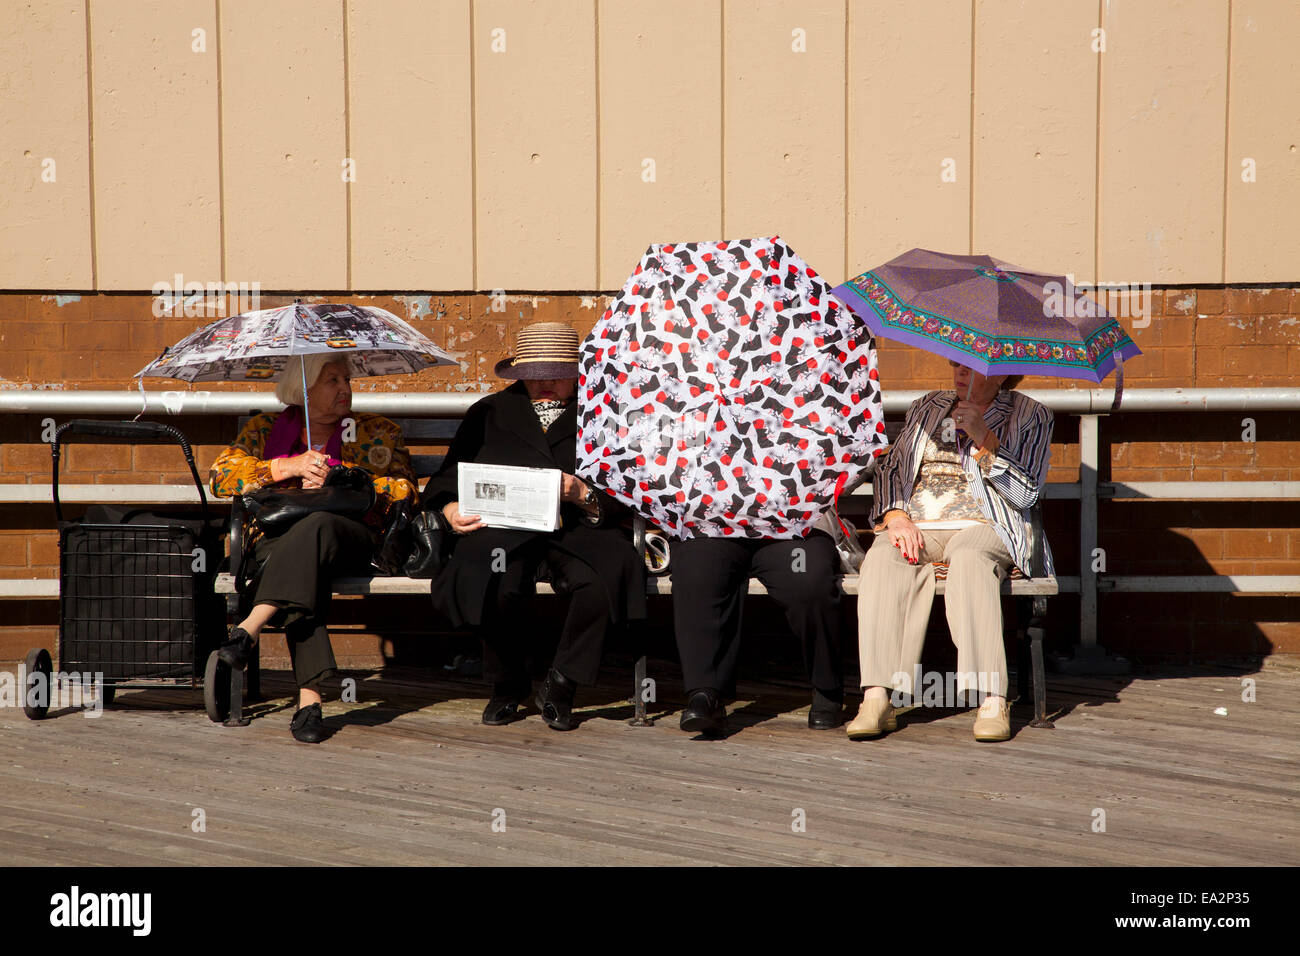 Les aînés s'asseoir sur la promenade, Brighton Beach, Brooklyn, New York, États-Unis d'Amérique Banque D'Images